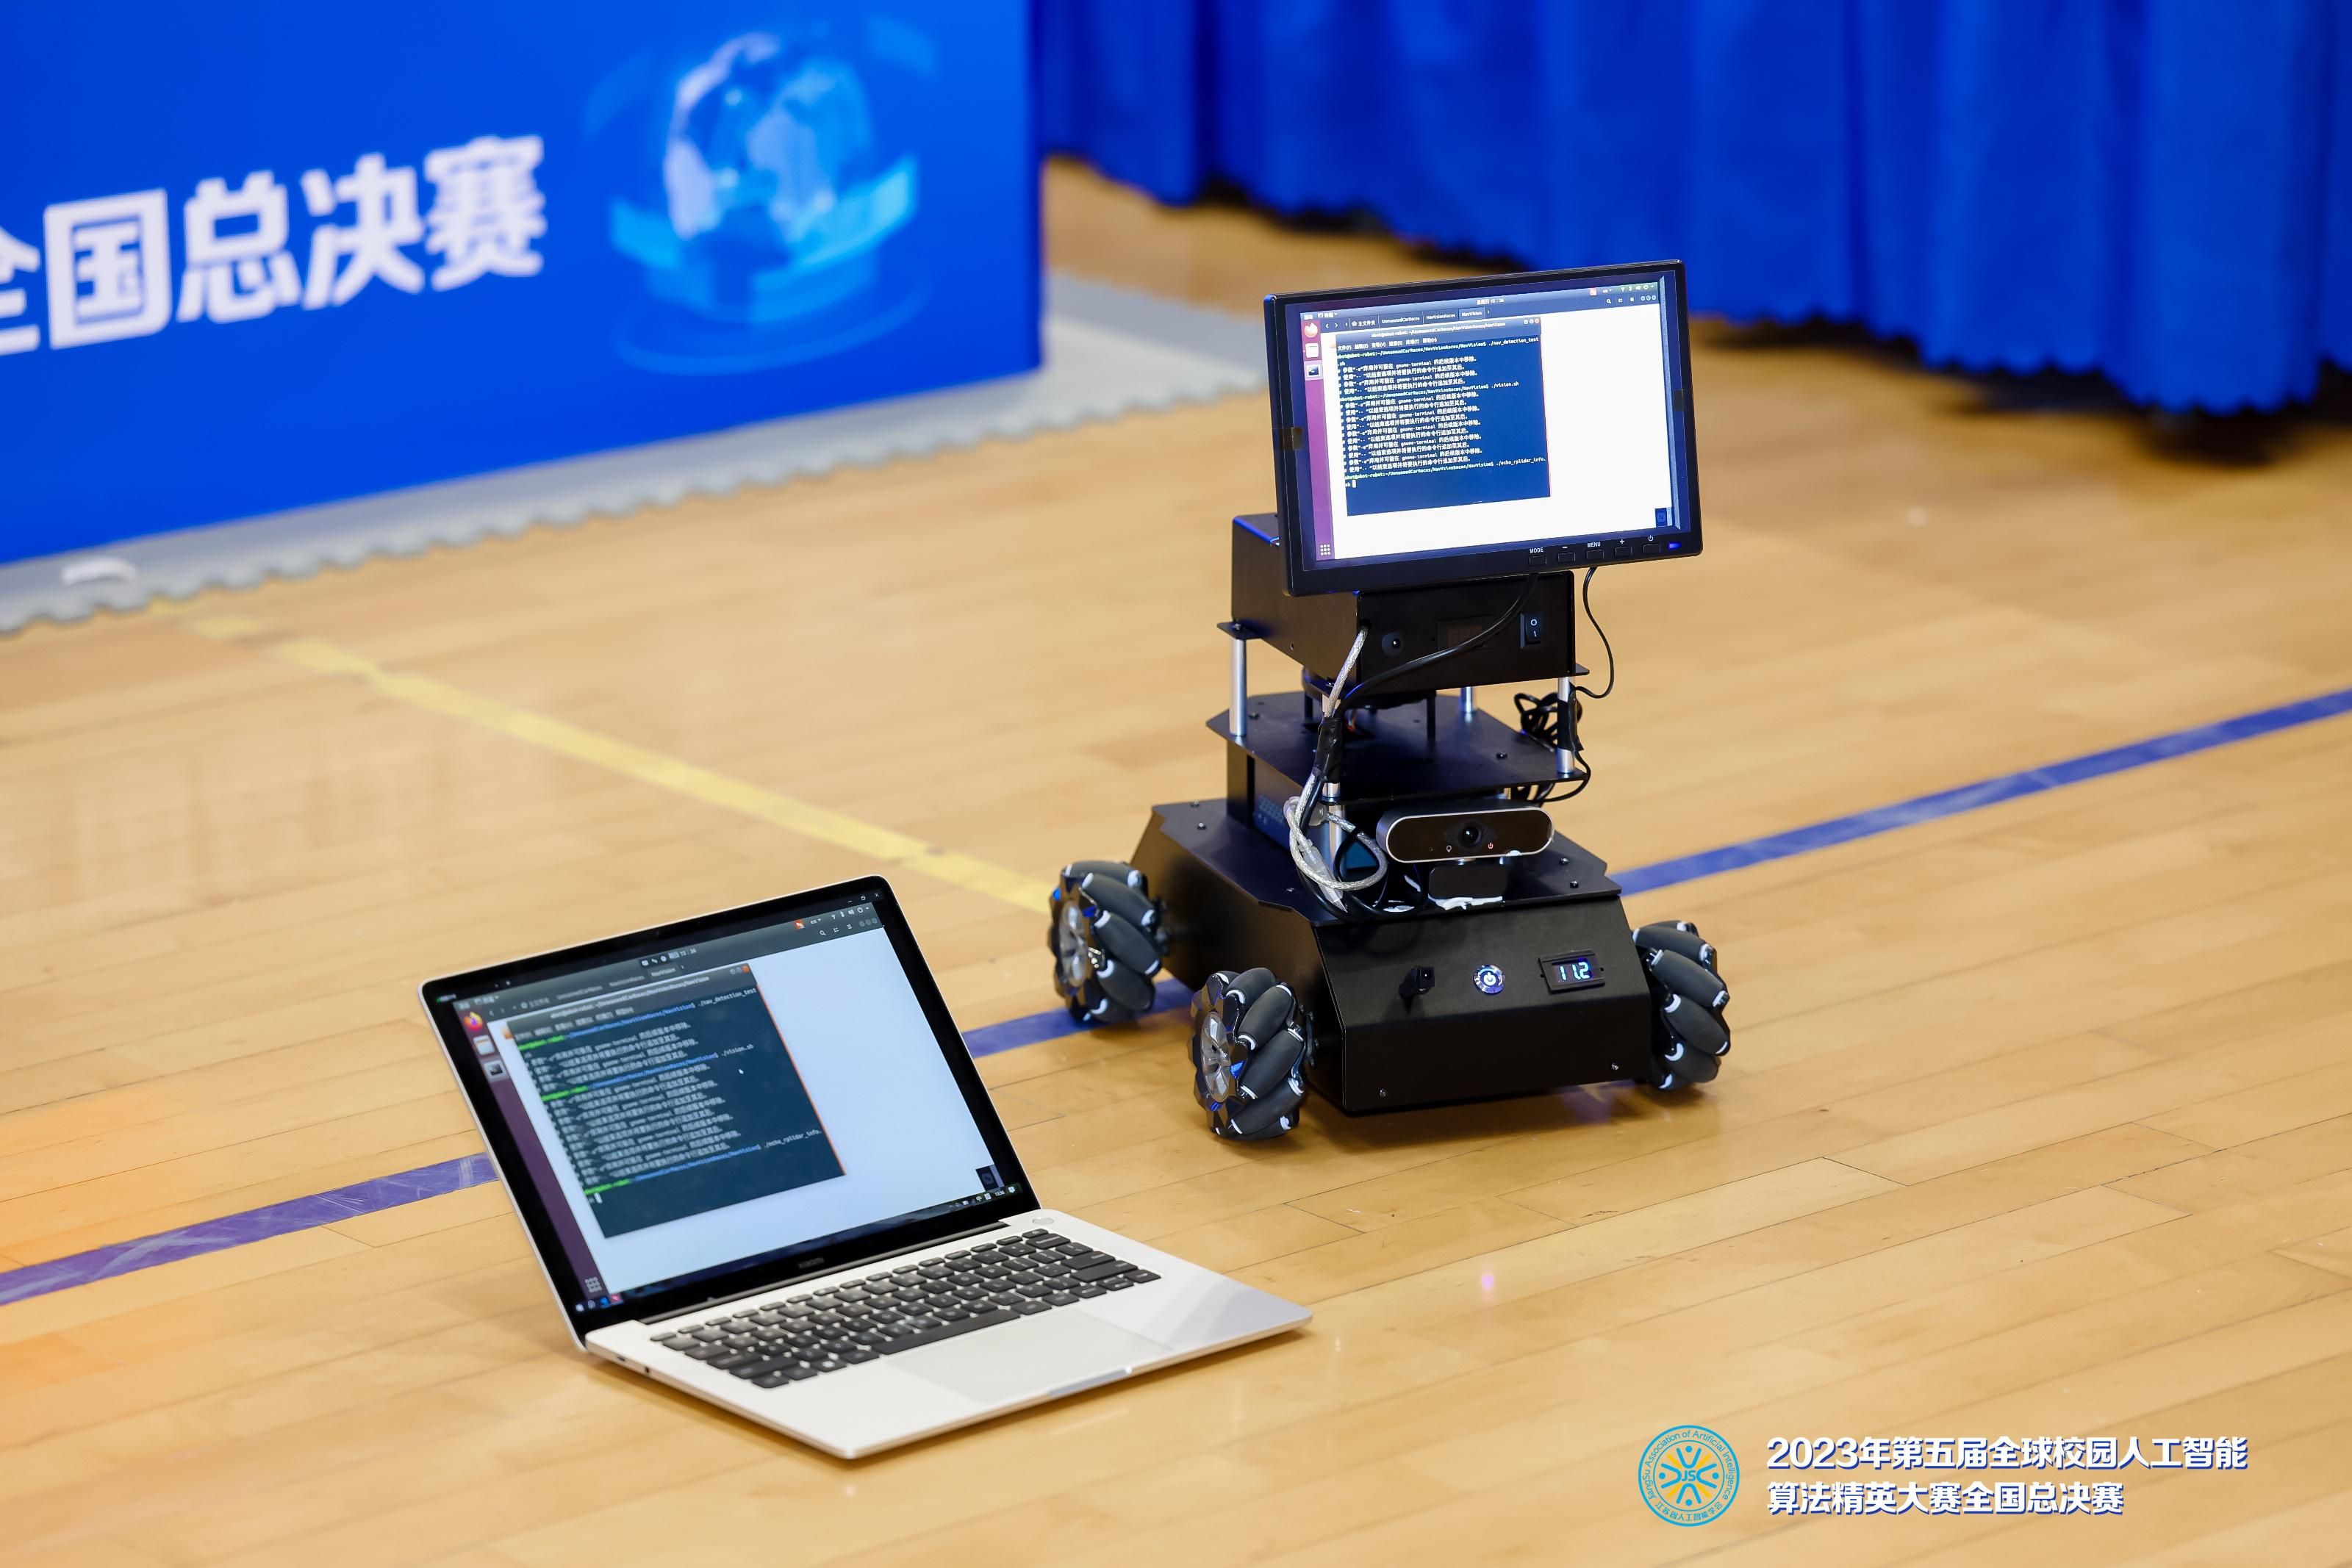 赛氪为第五届全球校园人工智能算法精英大赛决赛提供技术支持